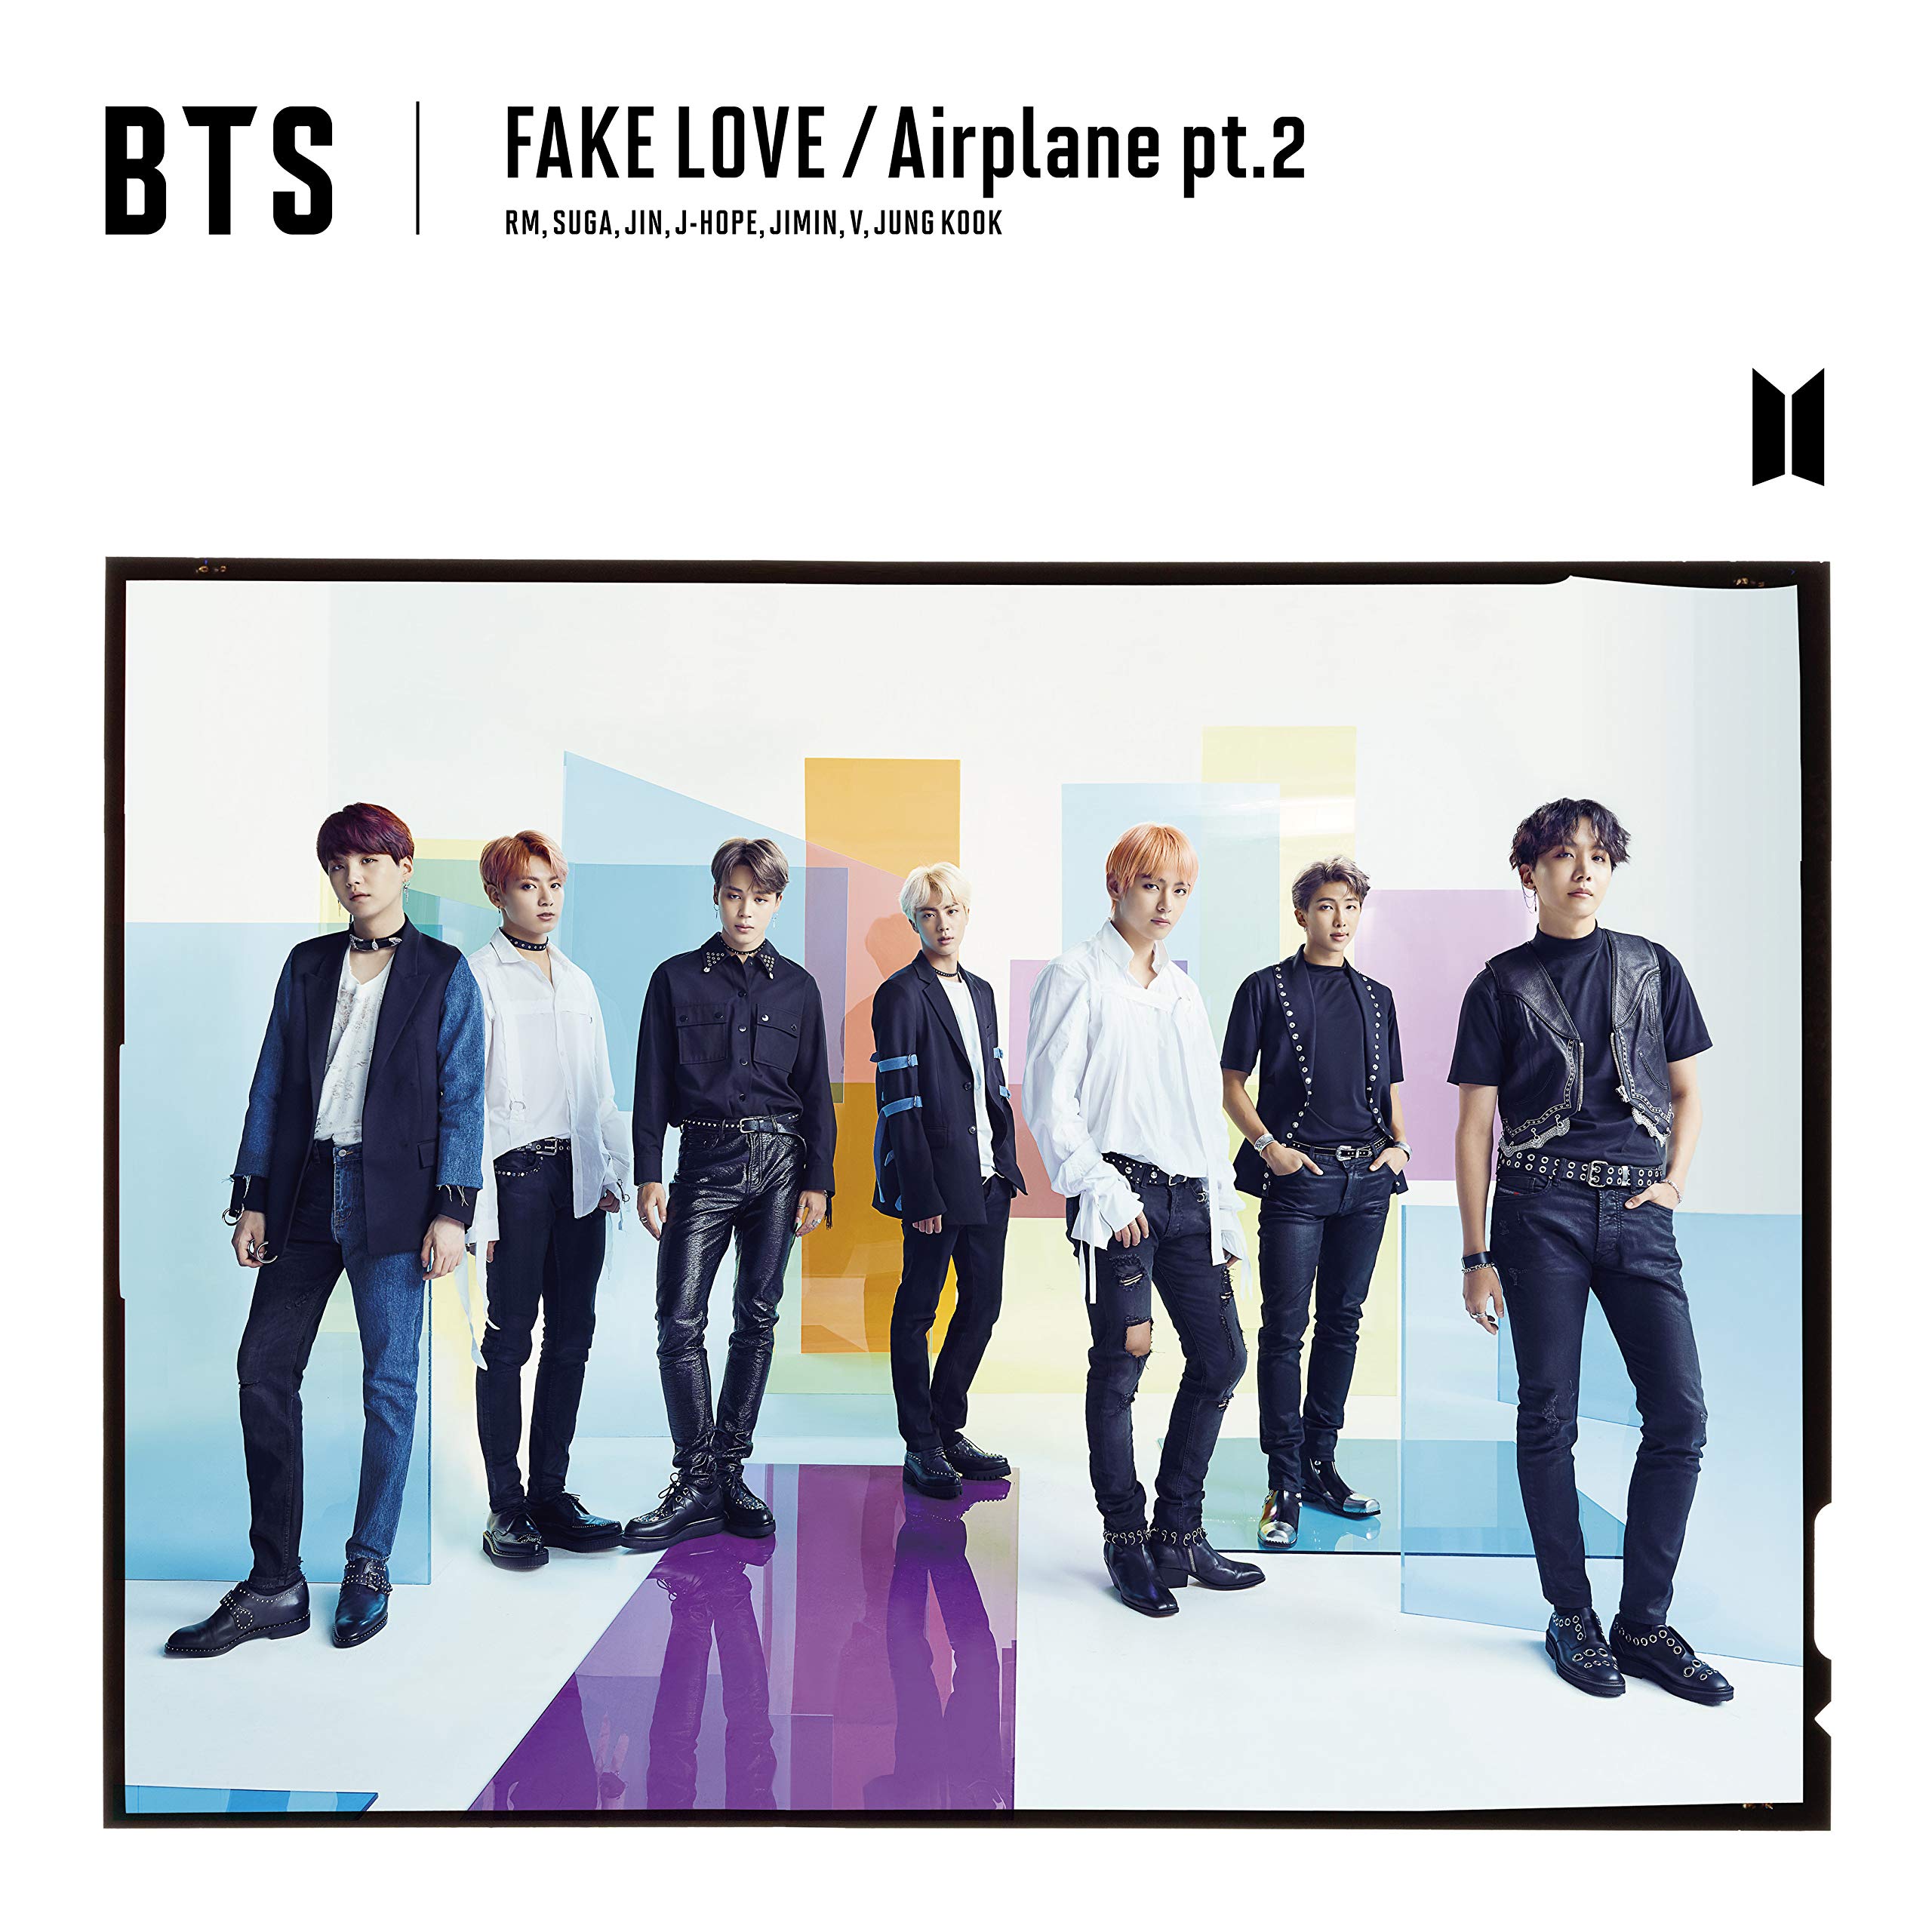 Bird/Fake Love/Airplane Pt.2 Version A